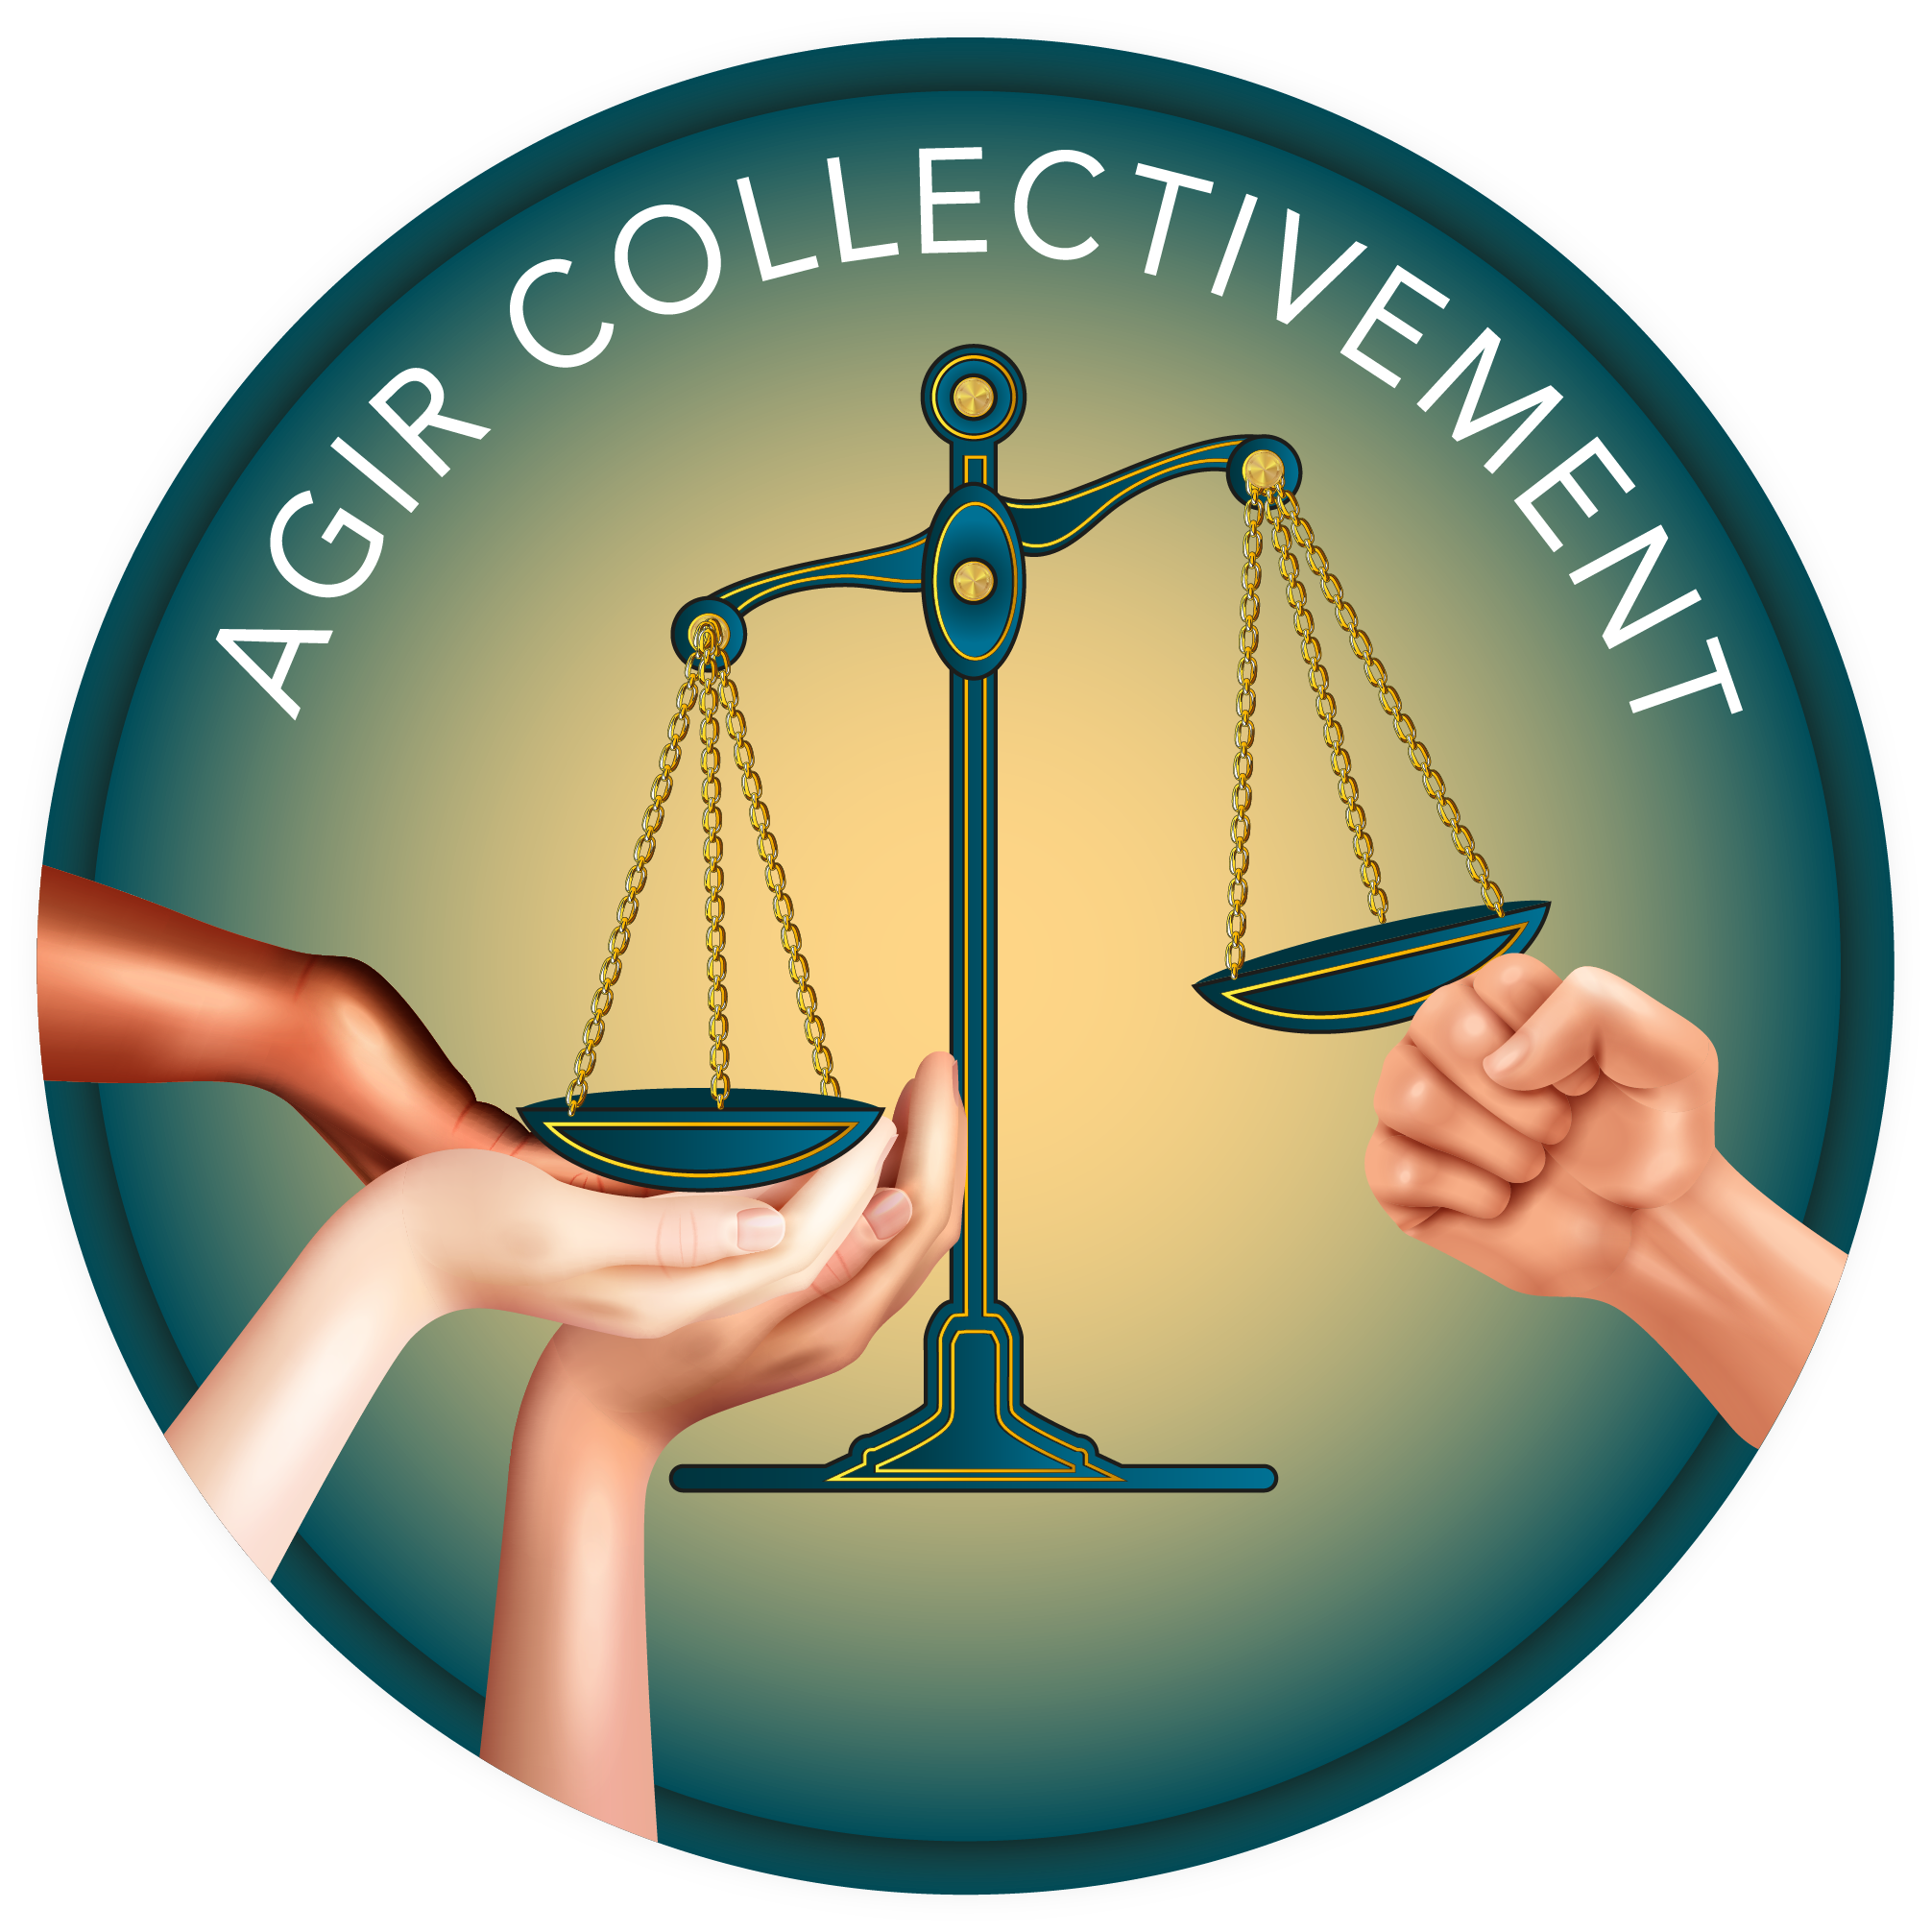 Cabinet d'avocats spécialisé dans la protection de l'environnement, du climat et de la biodiversité. Agir collectivement, actions pour l'adaptation écologique.